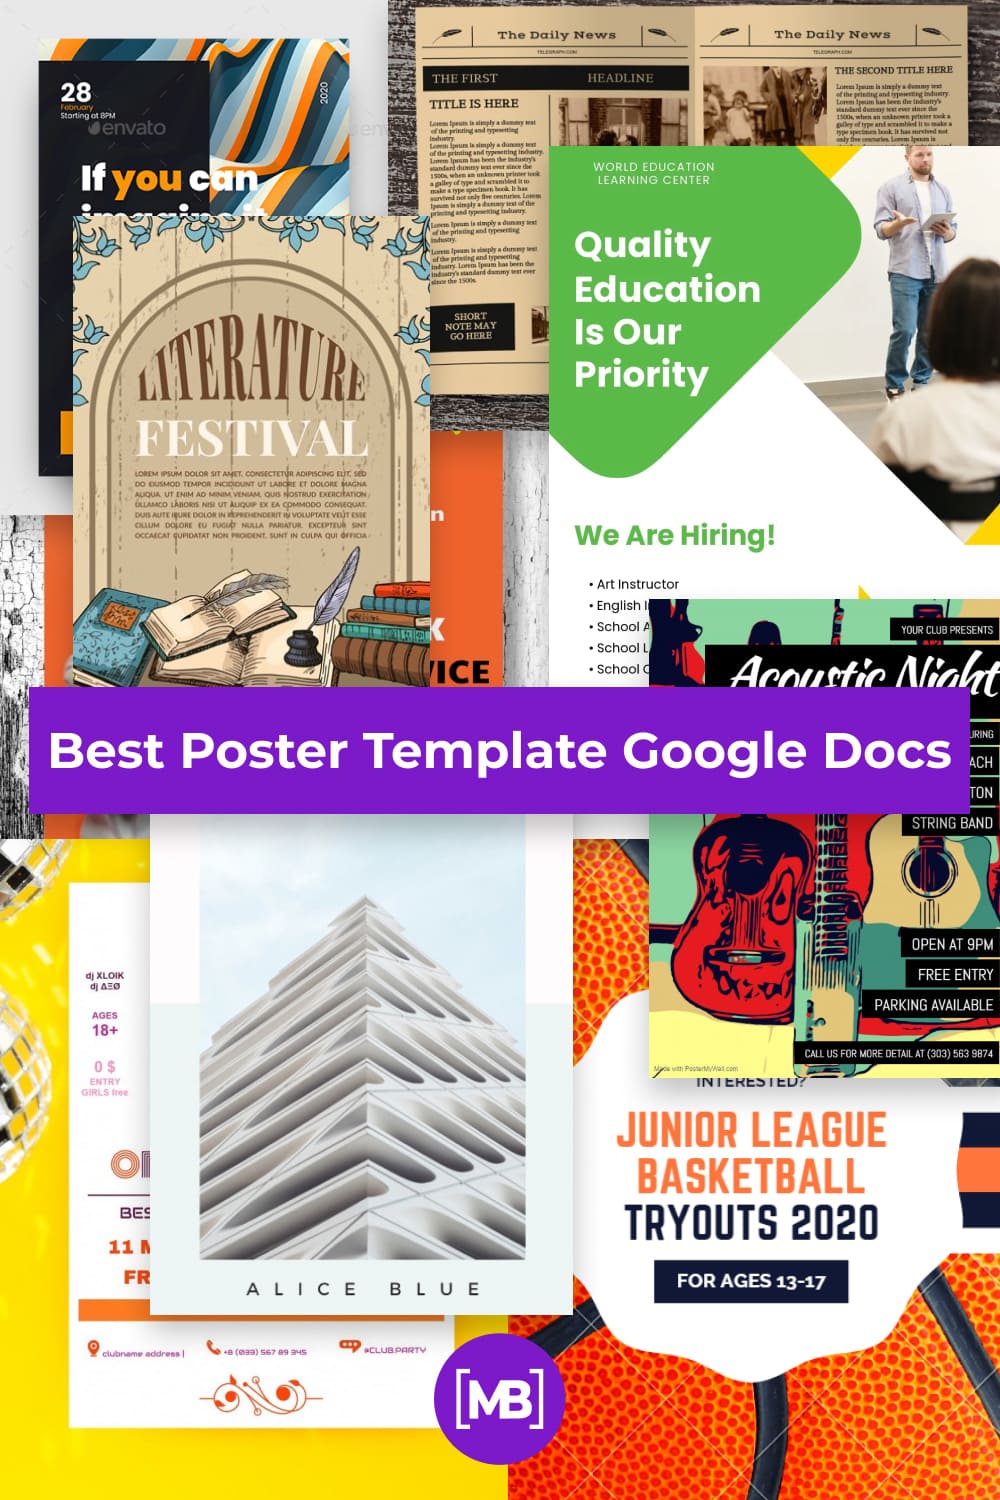 Best Poster Template Google Docs Pinterest.